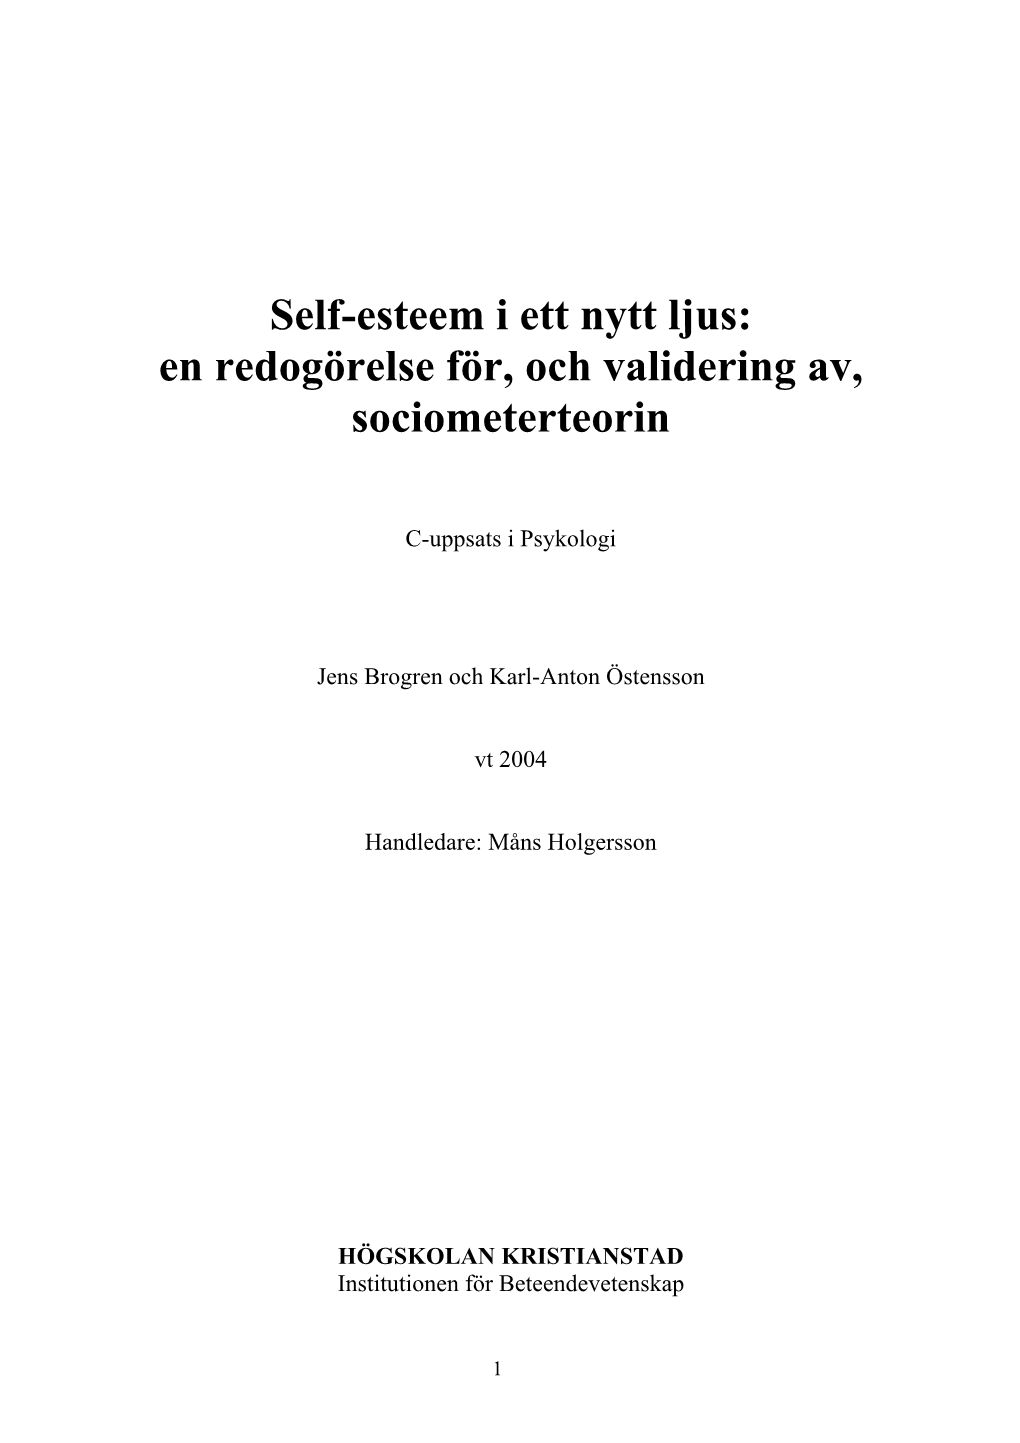 Self-Esteem I Ett Nytt Ljus: En Redogörelse För, Och Validering Av, Sociometerteorin